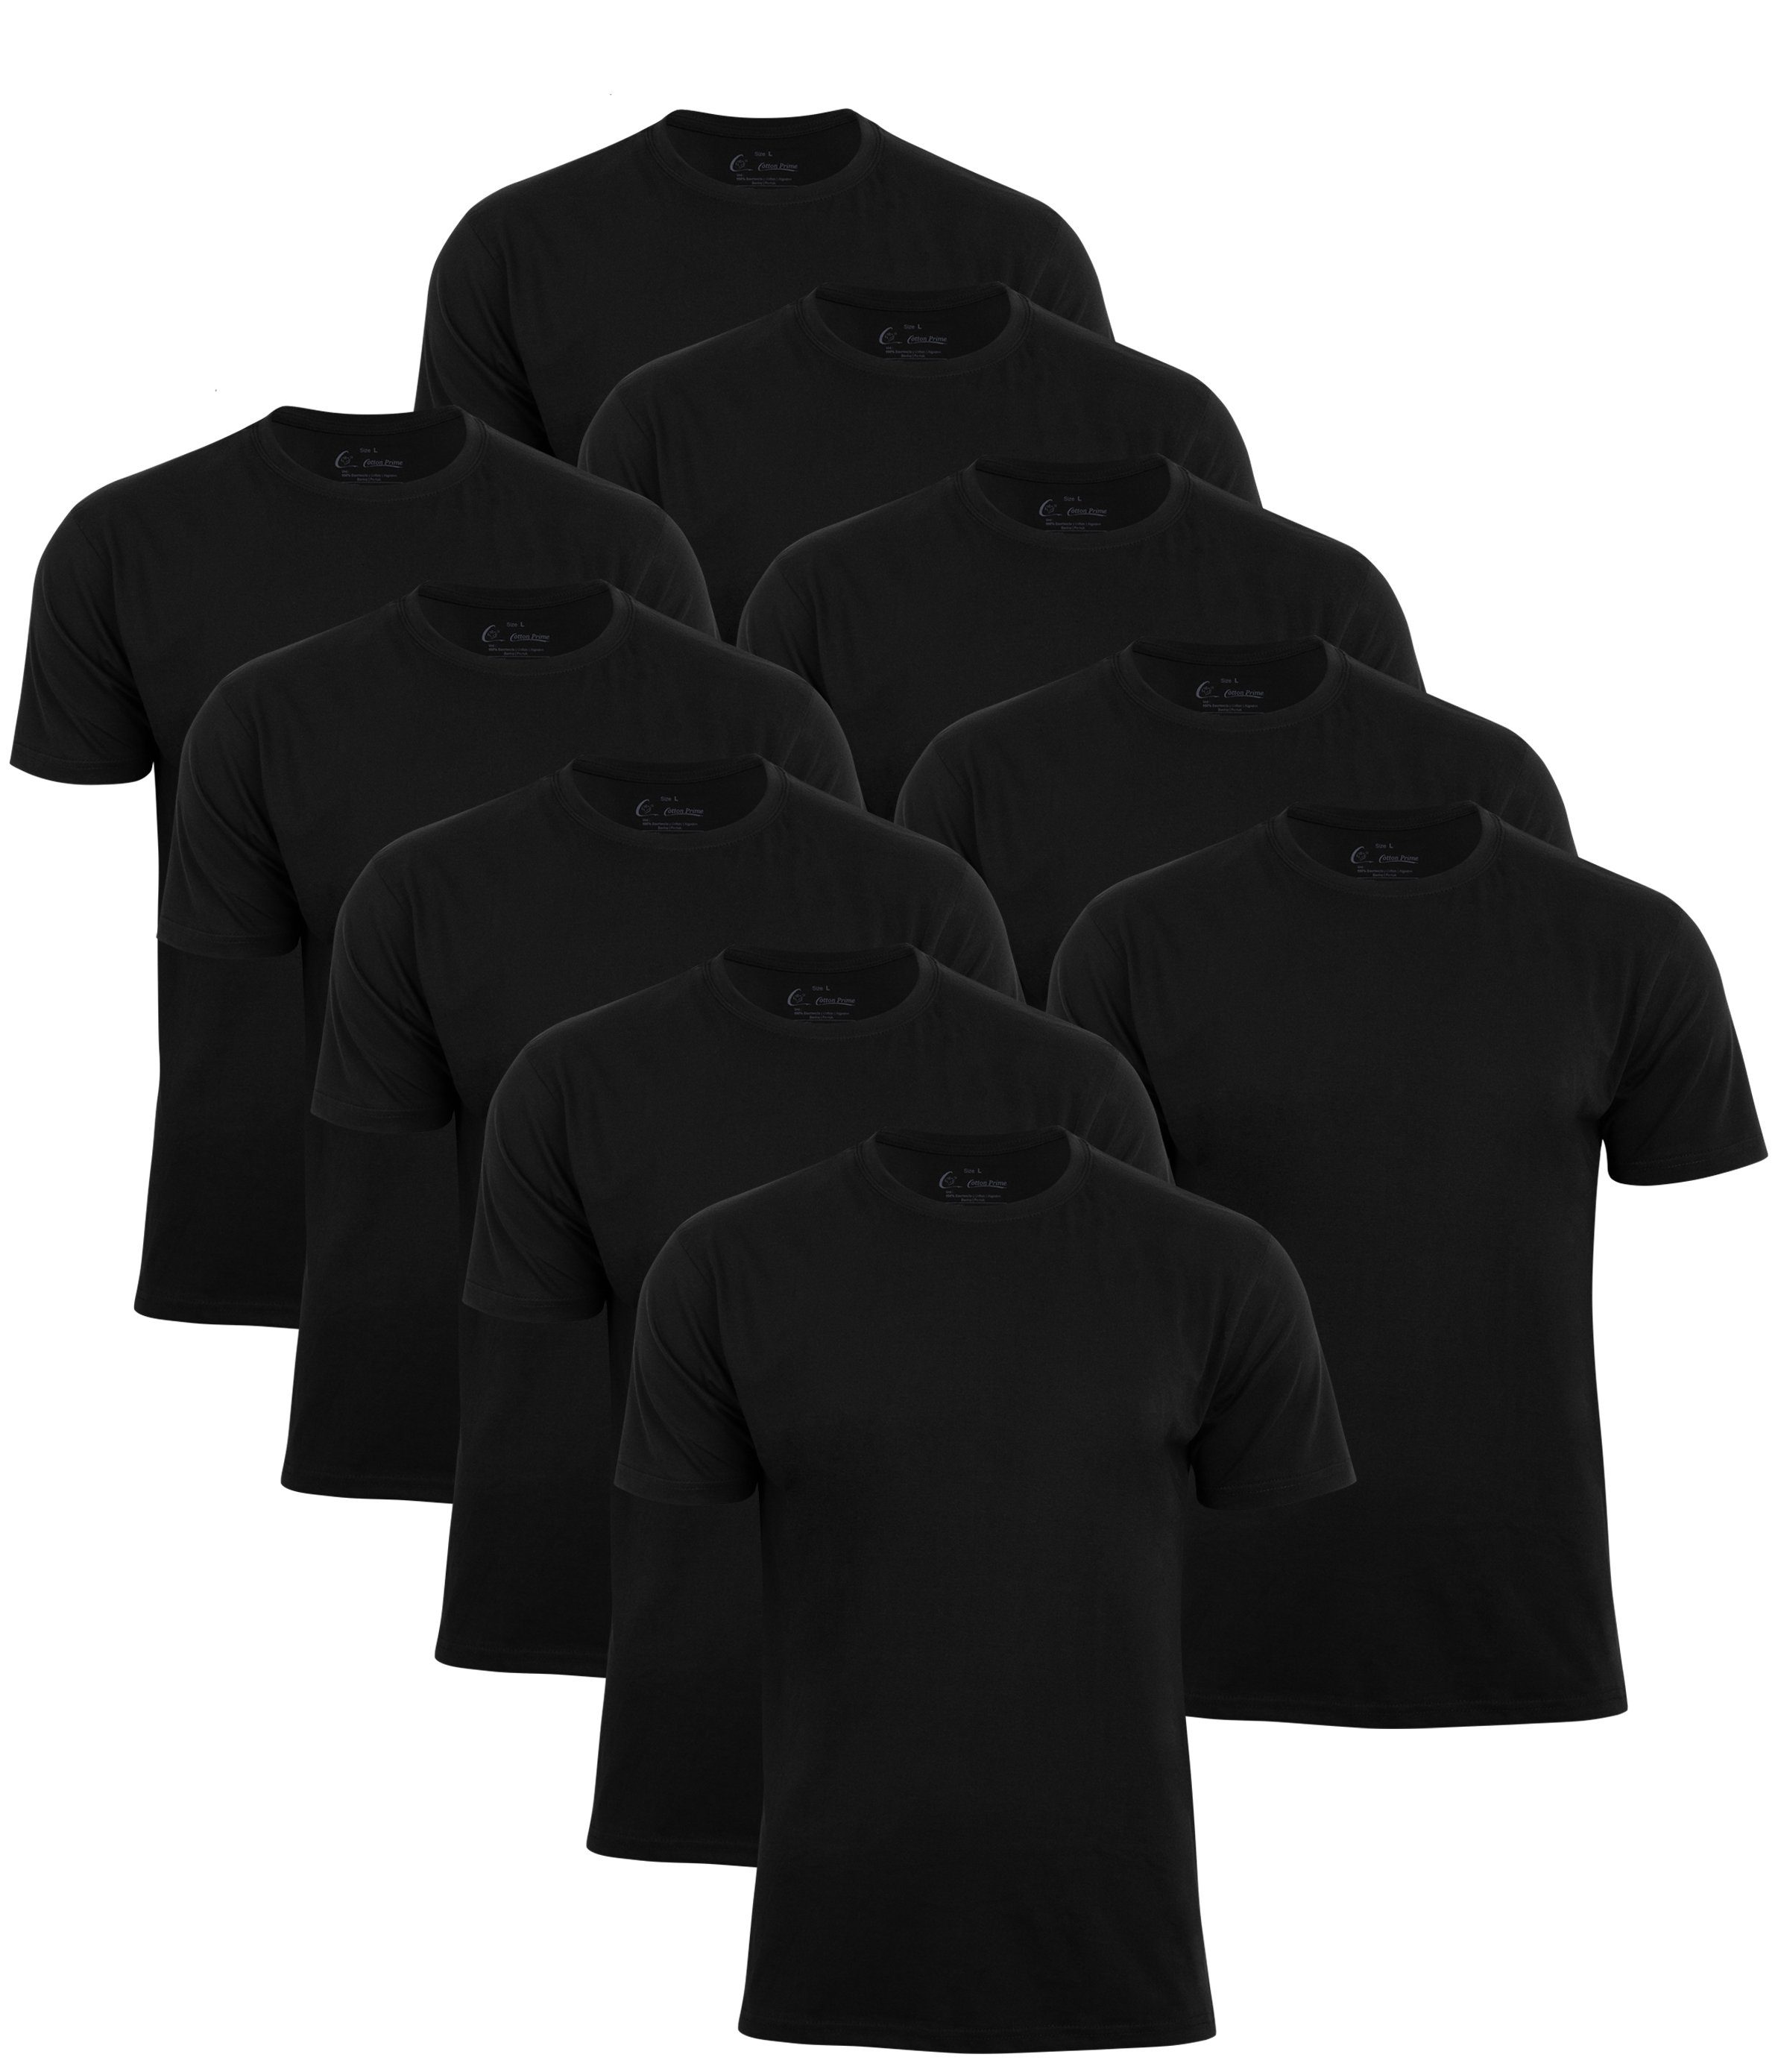 Cotton Schwarz O-Neck T-Shirt Prime® Tee -